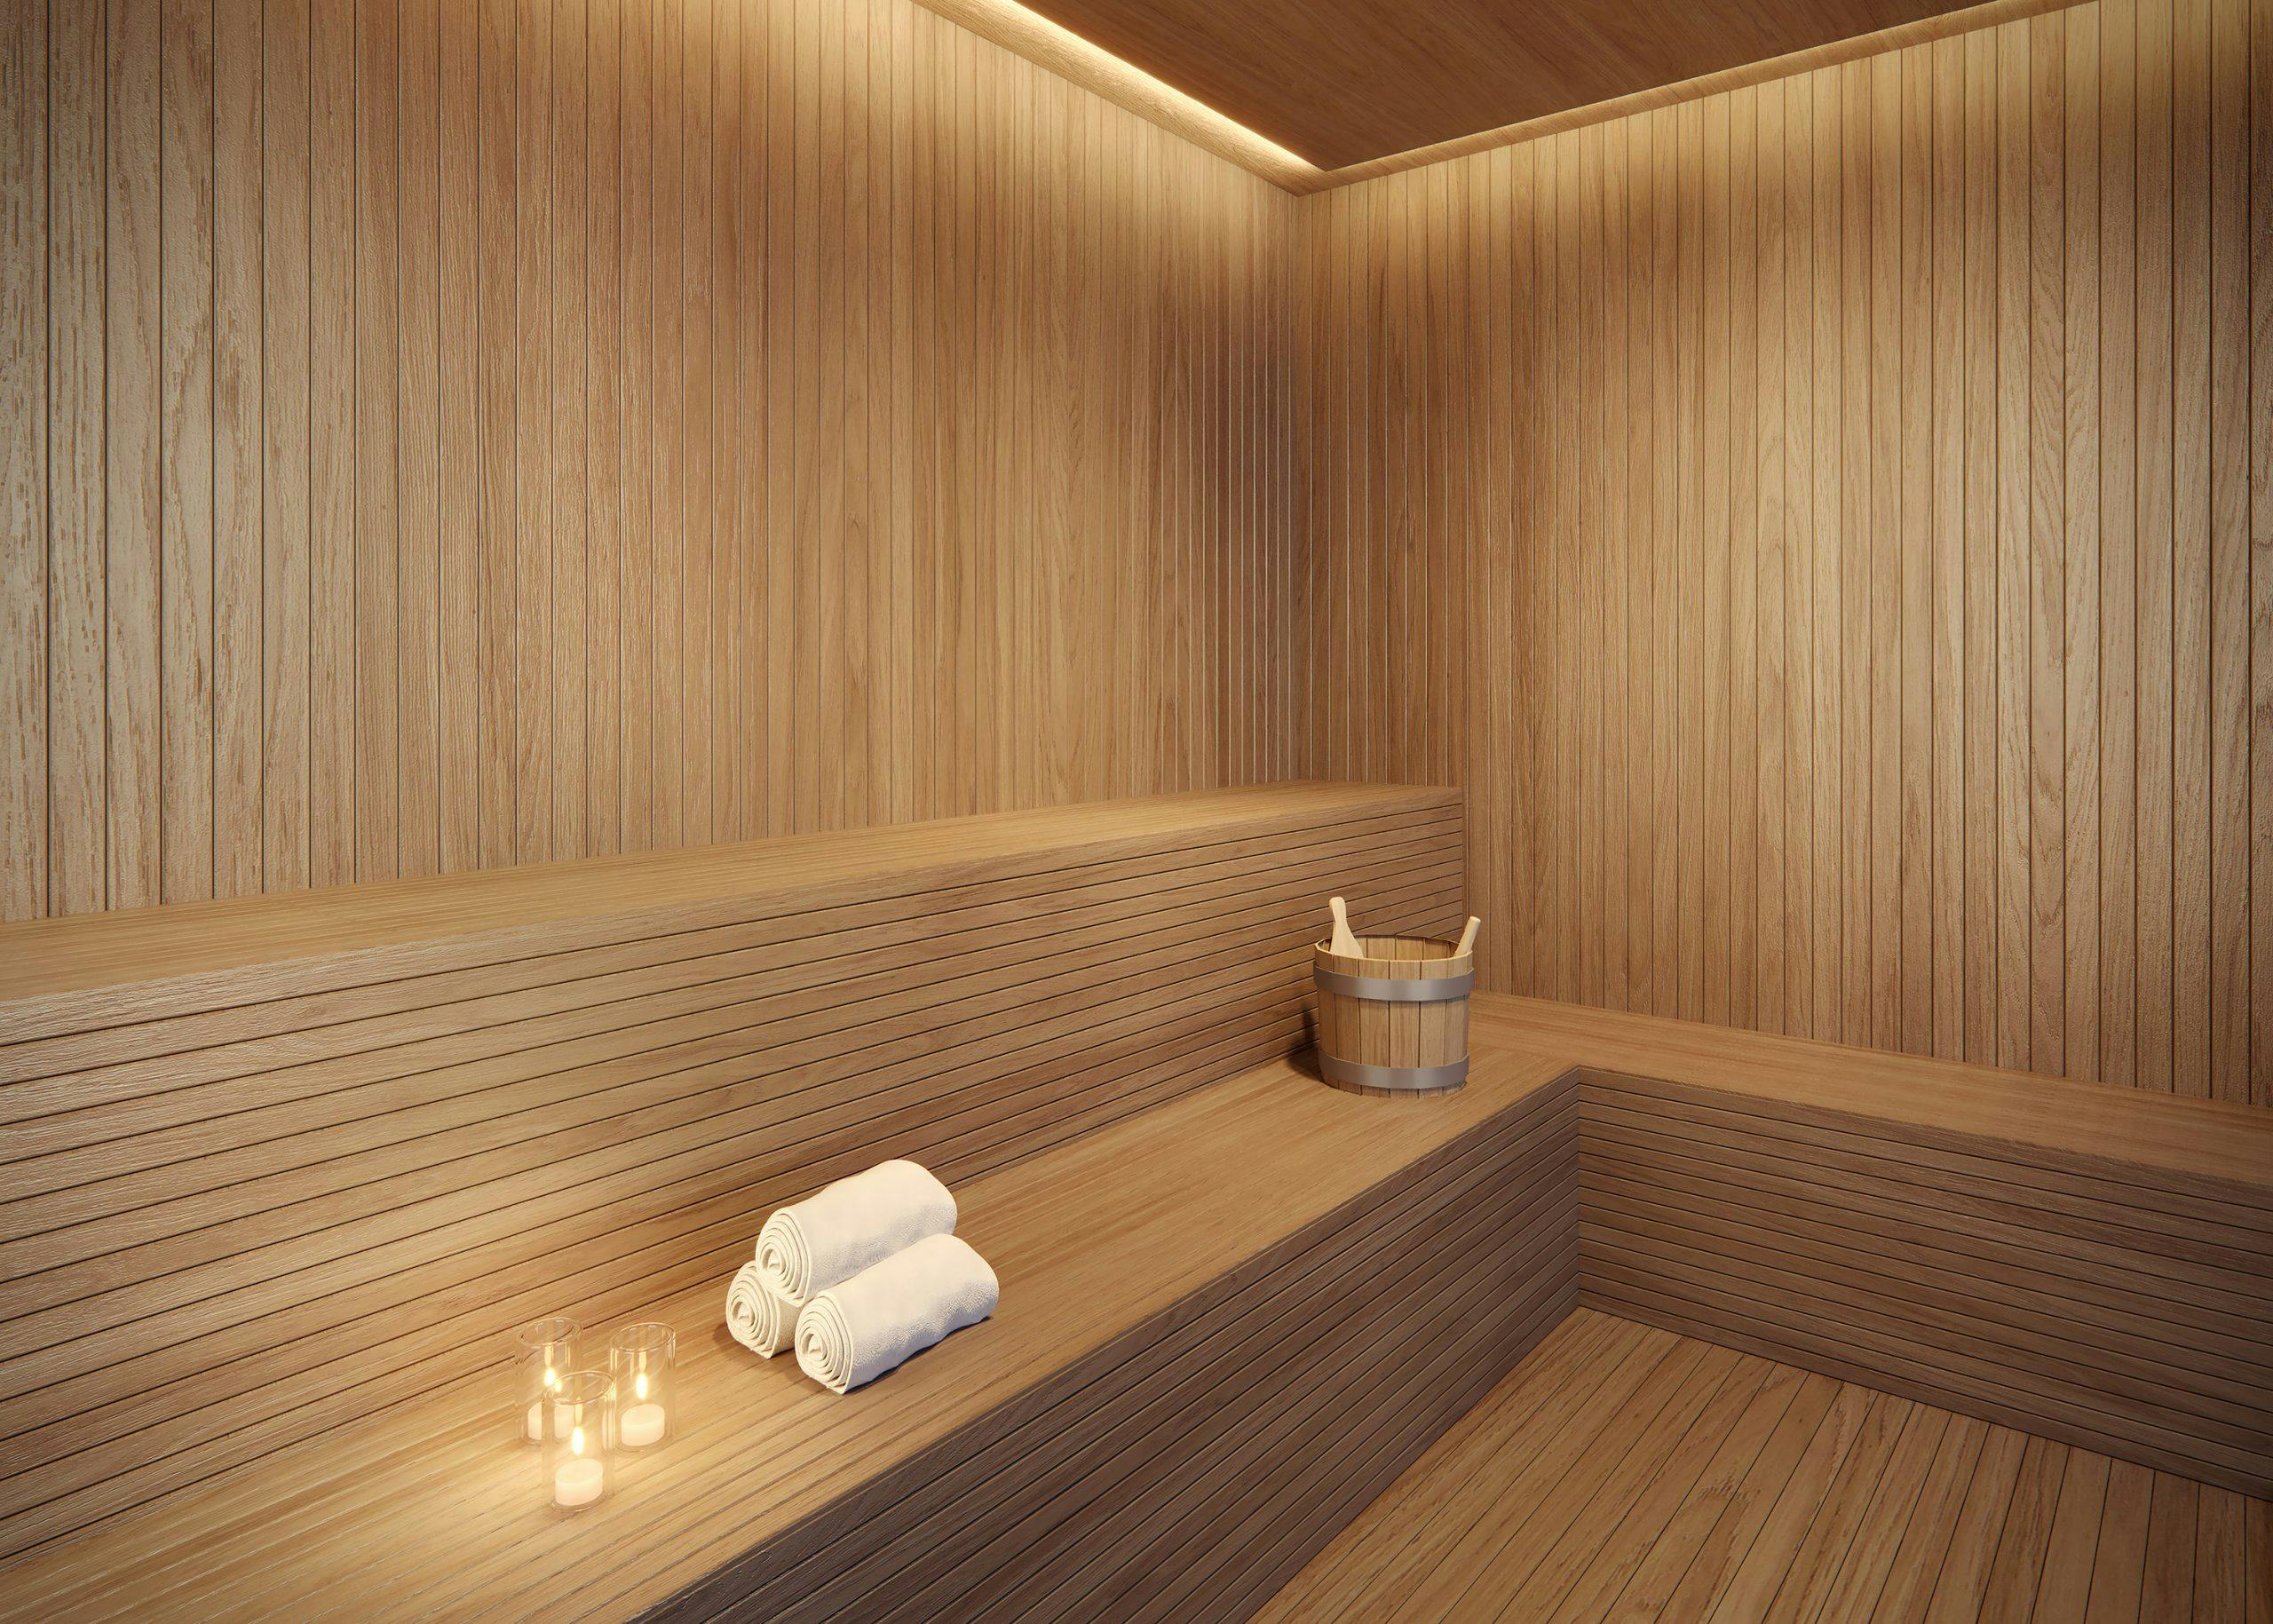 Imagem 3D da Sauna